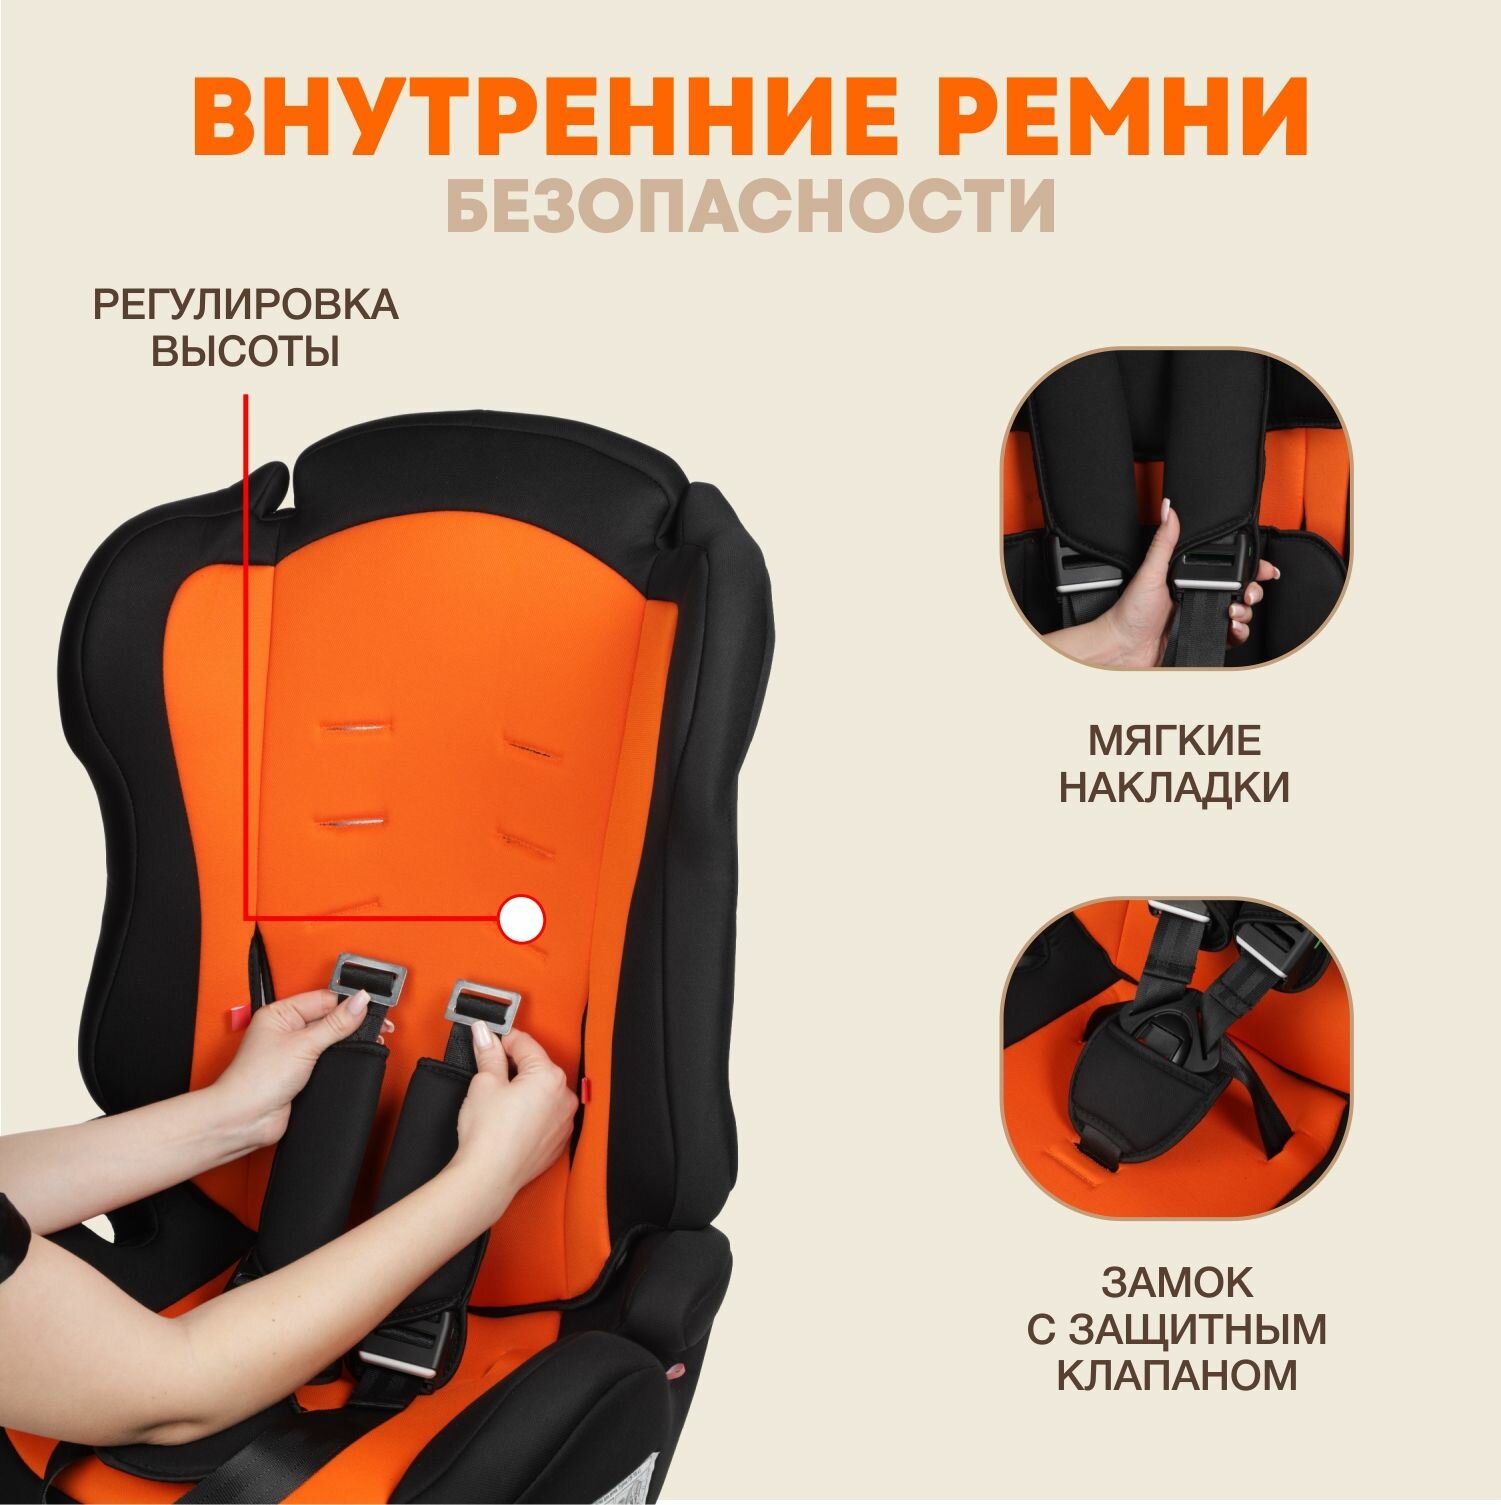 Автокресло детское Zlatek Atlantic от 9 до 36 кг, цвет оранжевый закат